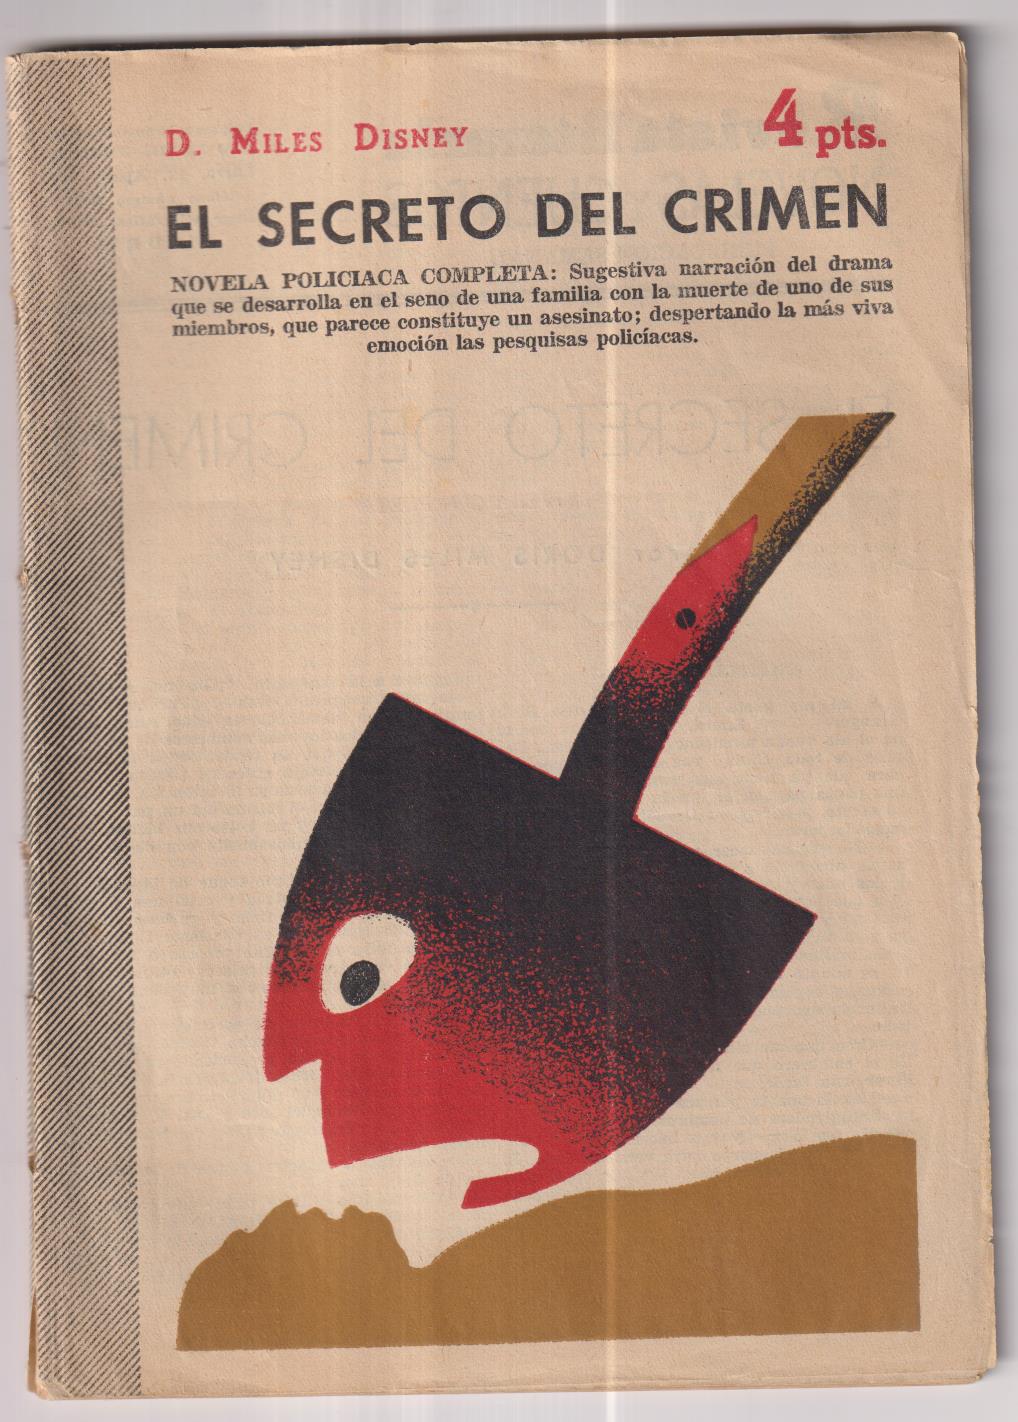 Revista Literaria Novelas y Cuentos nº 1279. D. Miles Disney. El Secreto del crimen, año 1955